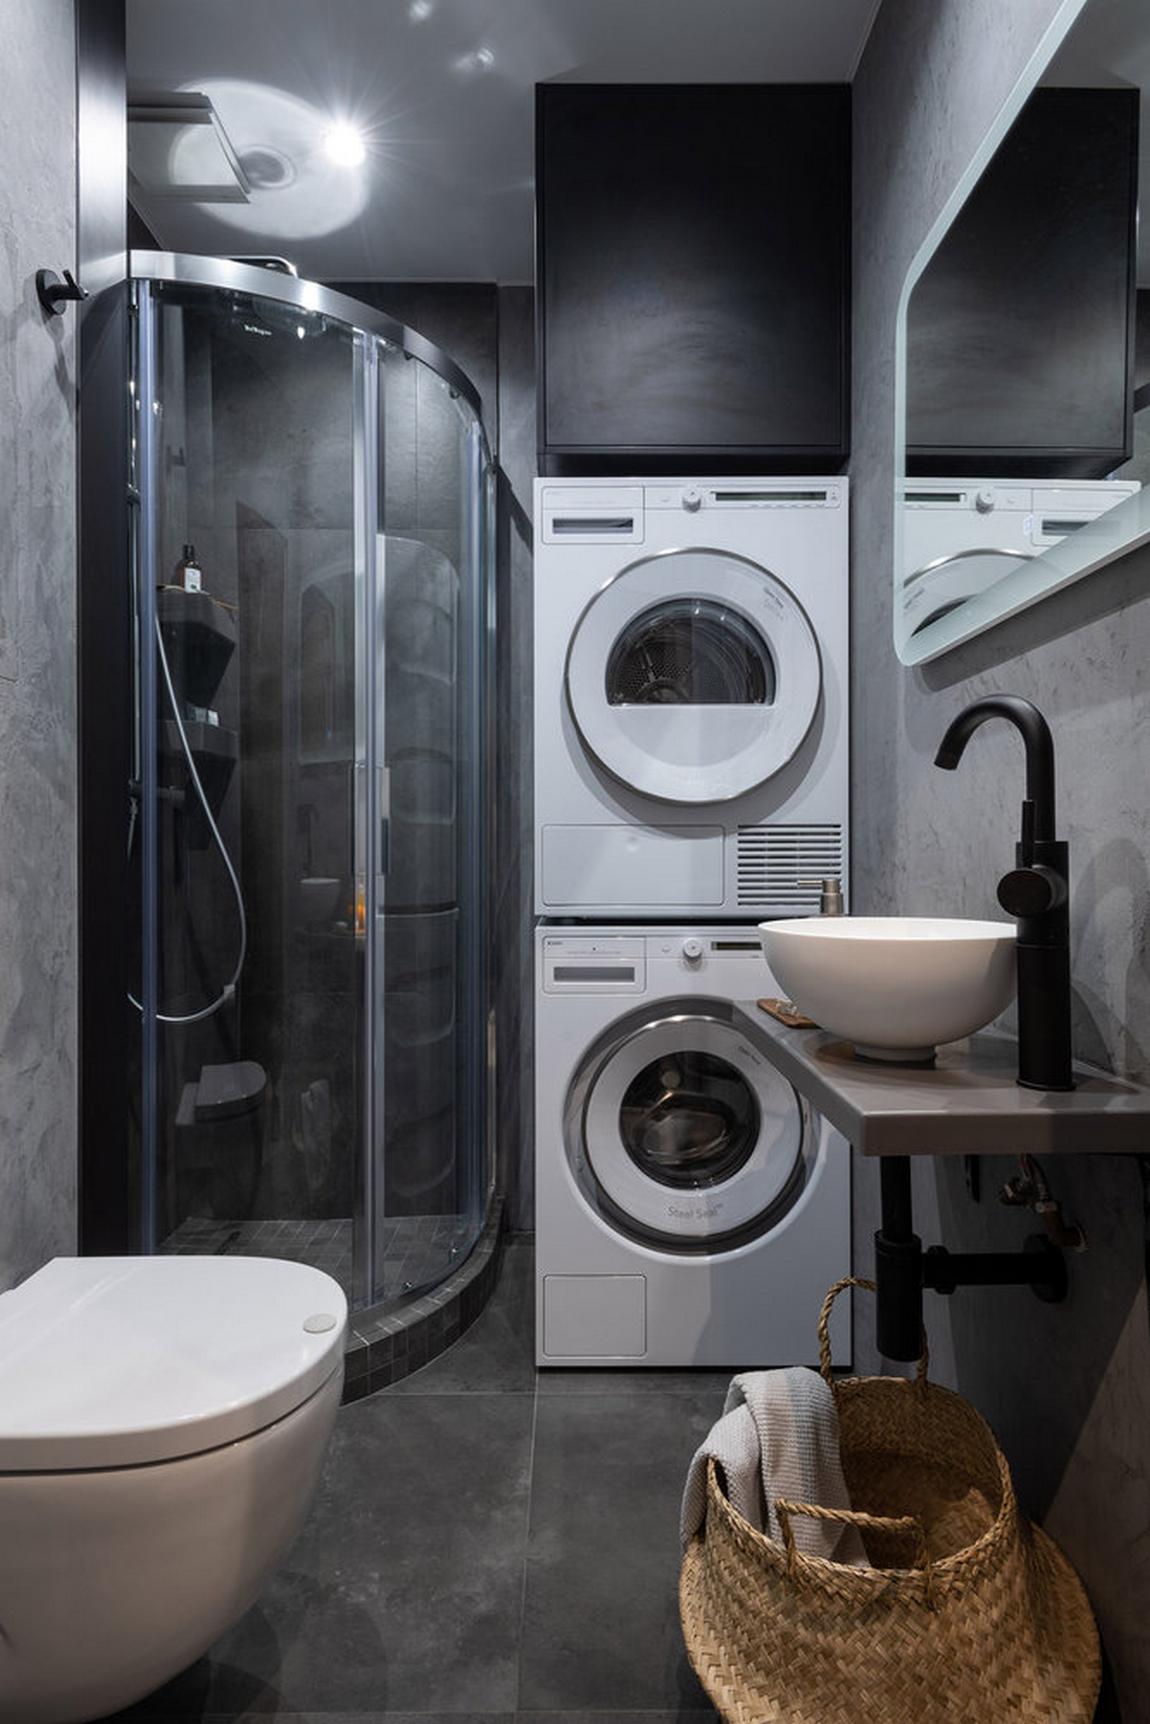 Vì phòng tắm có diện tích rất nhỏ và hẹp nên máy giặt và máy sấy được xếp chồng lên nhau để tiết kiệm không gian, phía trên cùng là chiếc tủ sơn đen đầy bí ẩn.